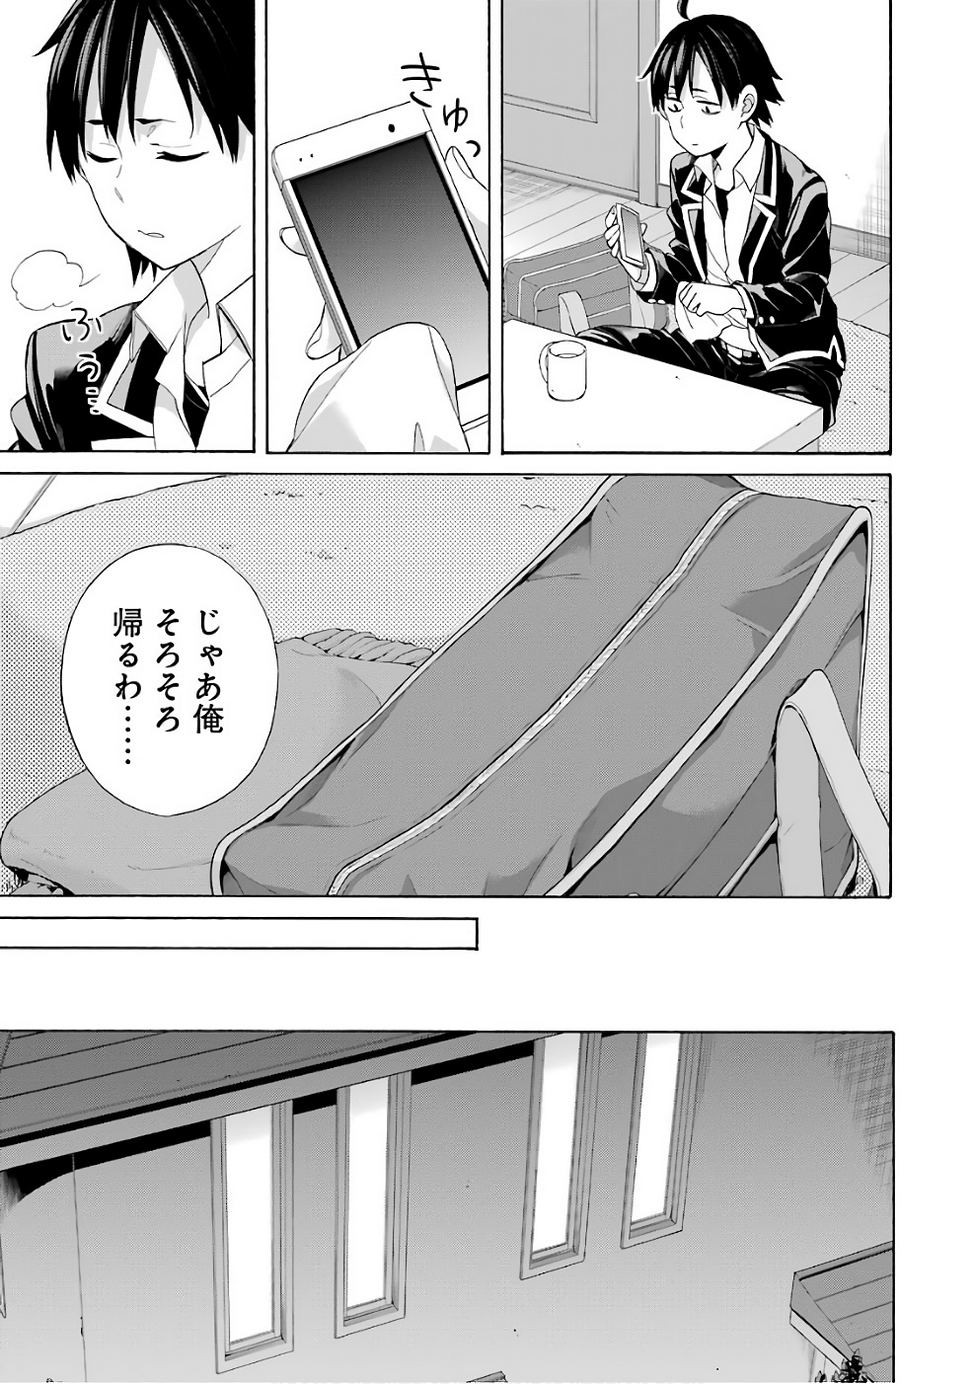 Yahari Ore no Seishun Rabukome wa Machigatte Iru. - Monologue - Chapter 57 - Page 3